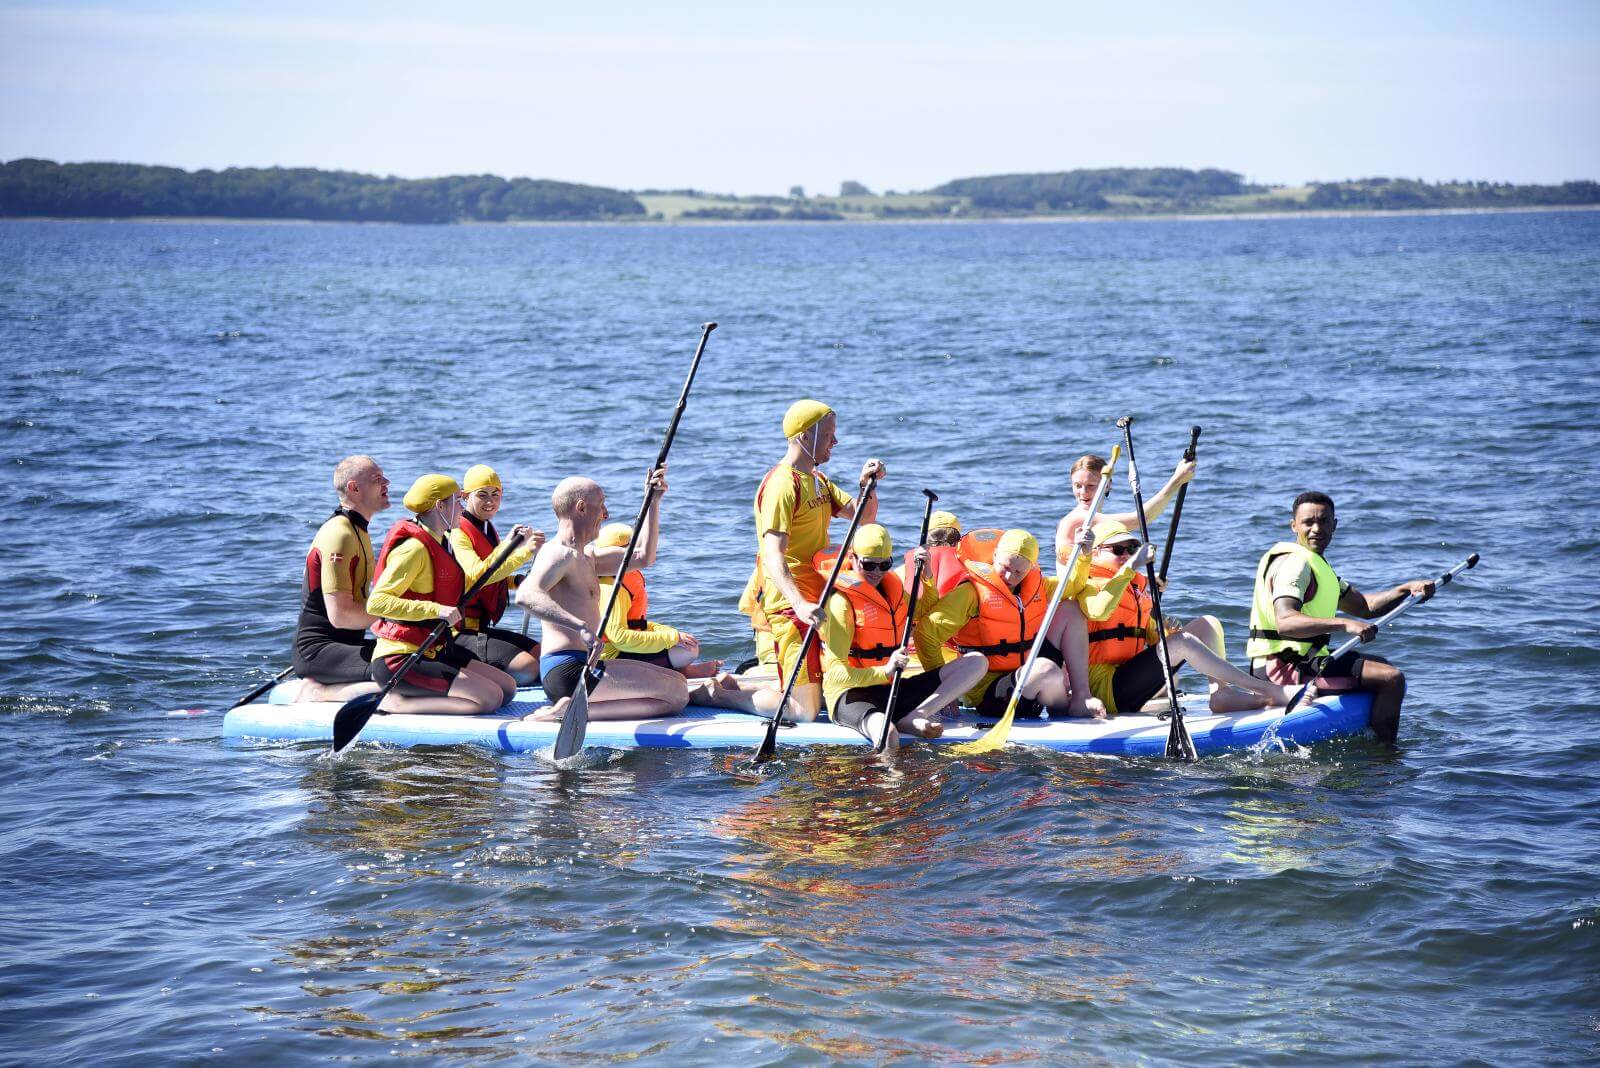 Et hold af 12 ældre elever roer på en stor oppustelig gummibåd i fjorden med to livreddere. Alle iført våddragter, redningsveste og gule badehætter